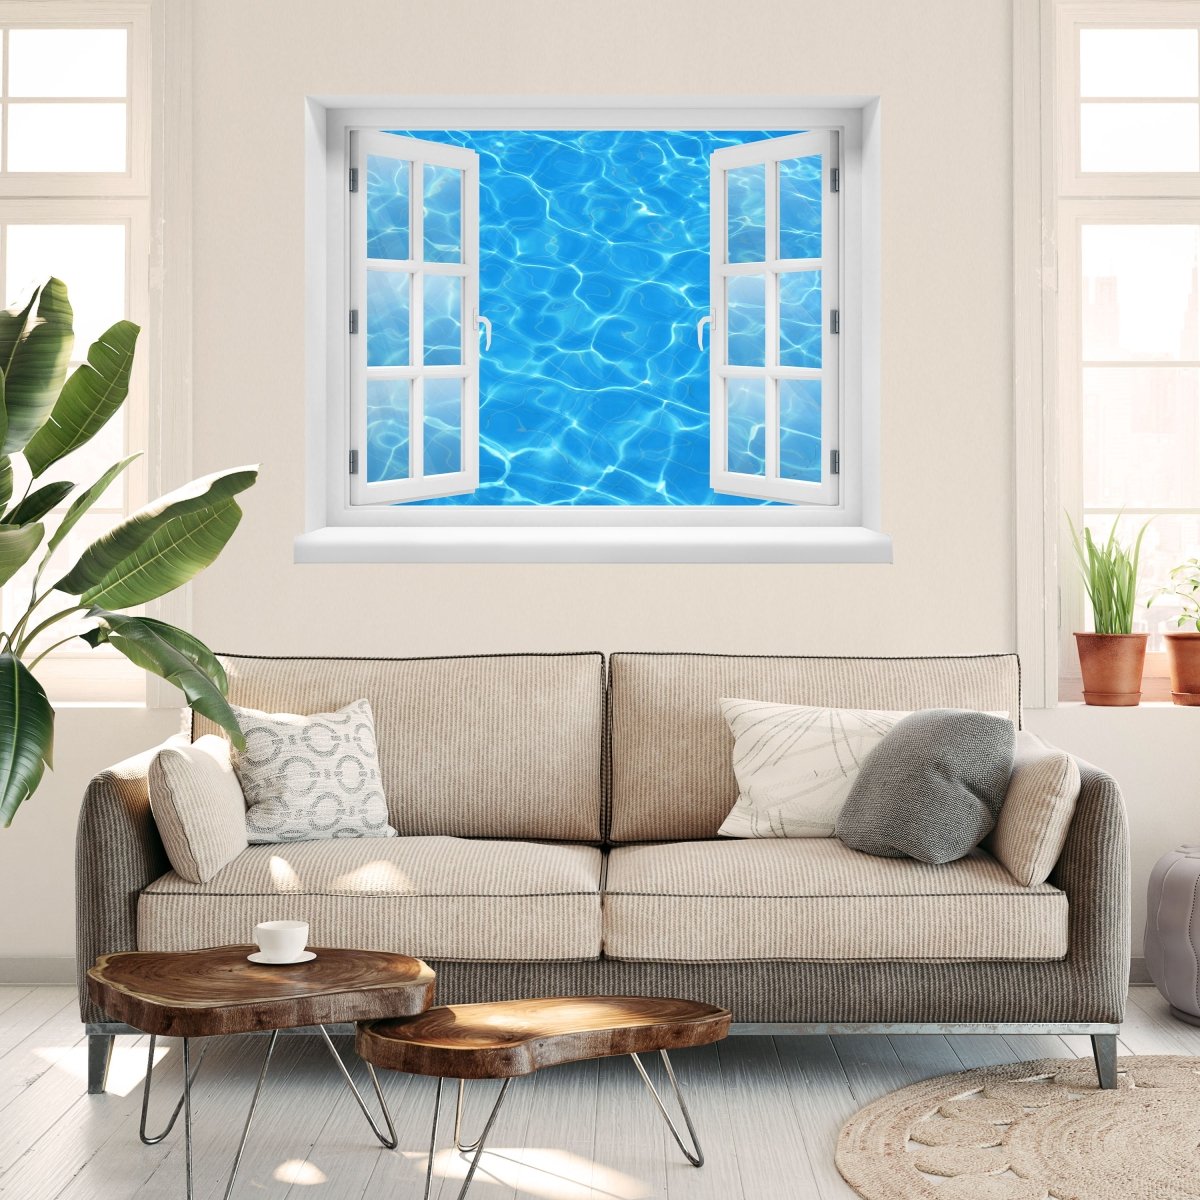 Sticker mural 3D eau piscine effet lumineux - Wall Decal M1010